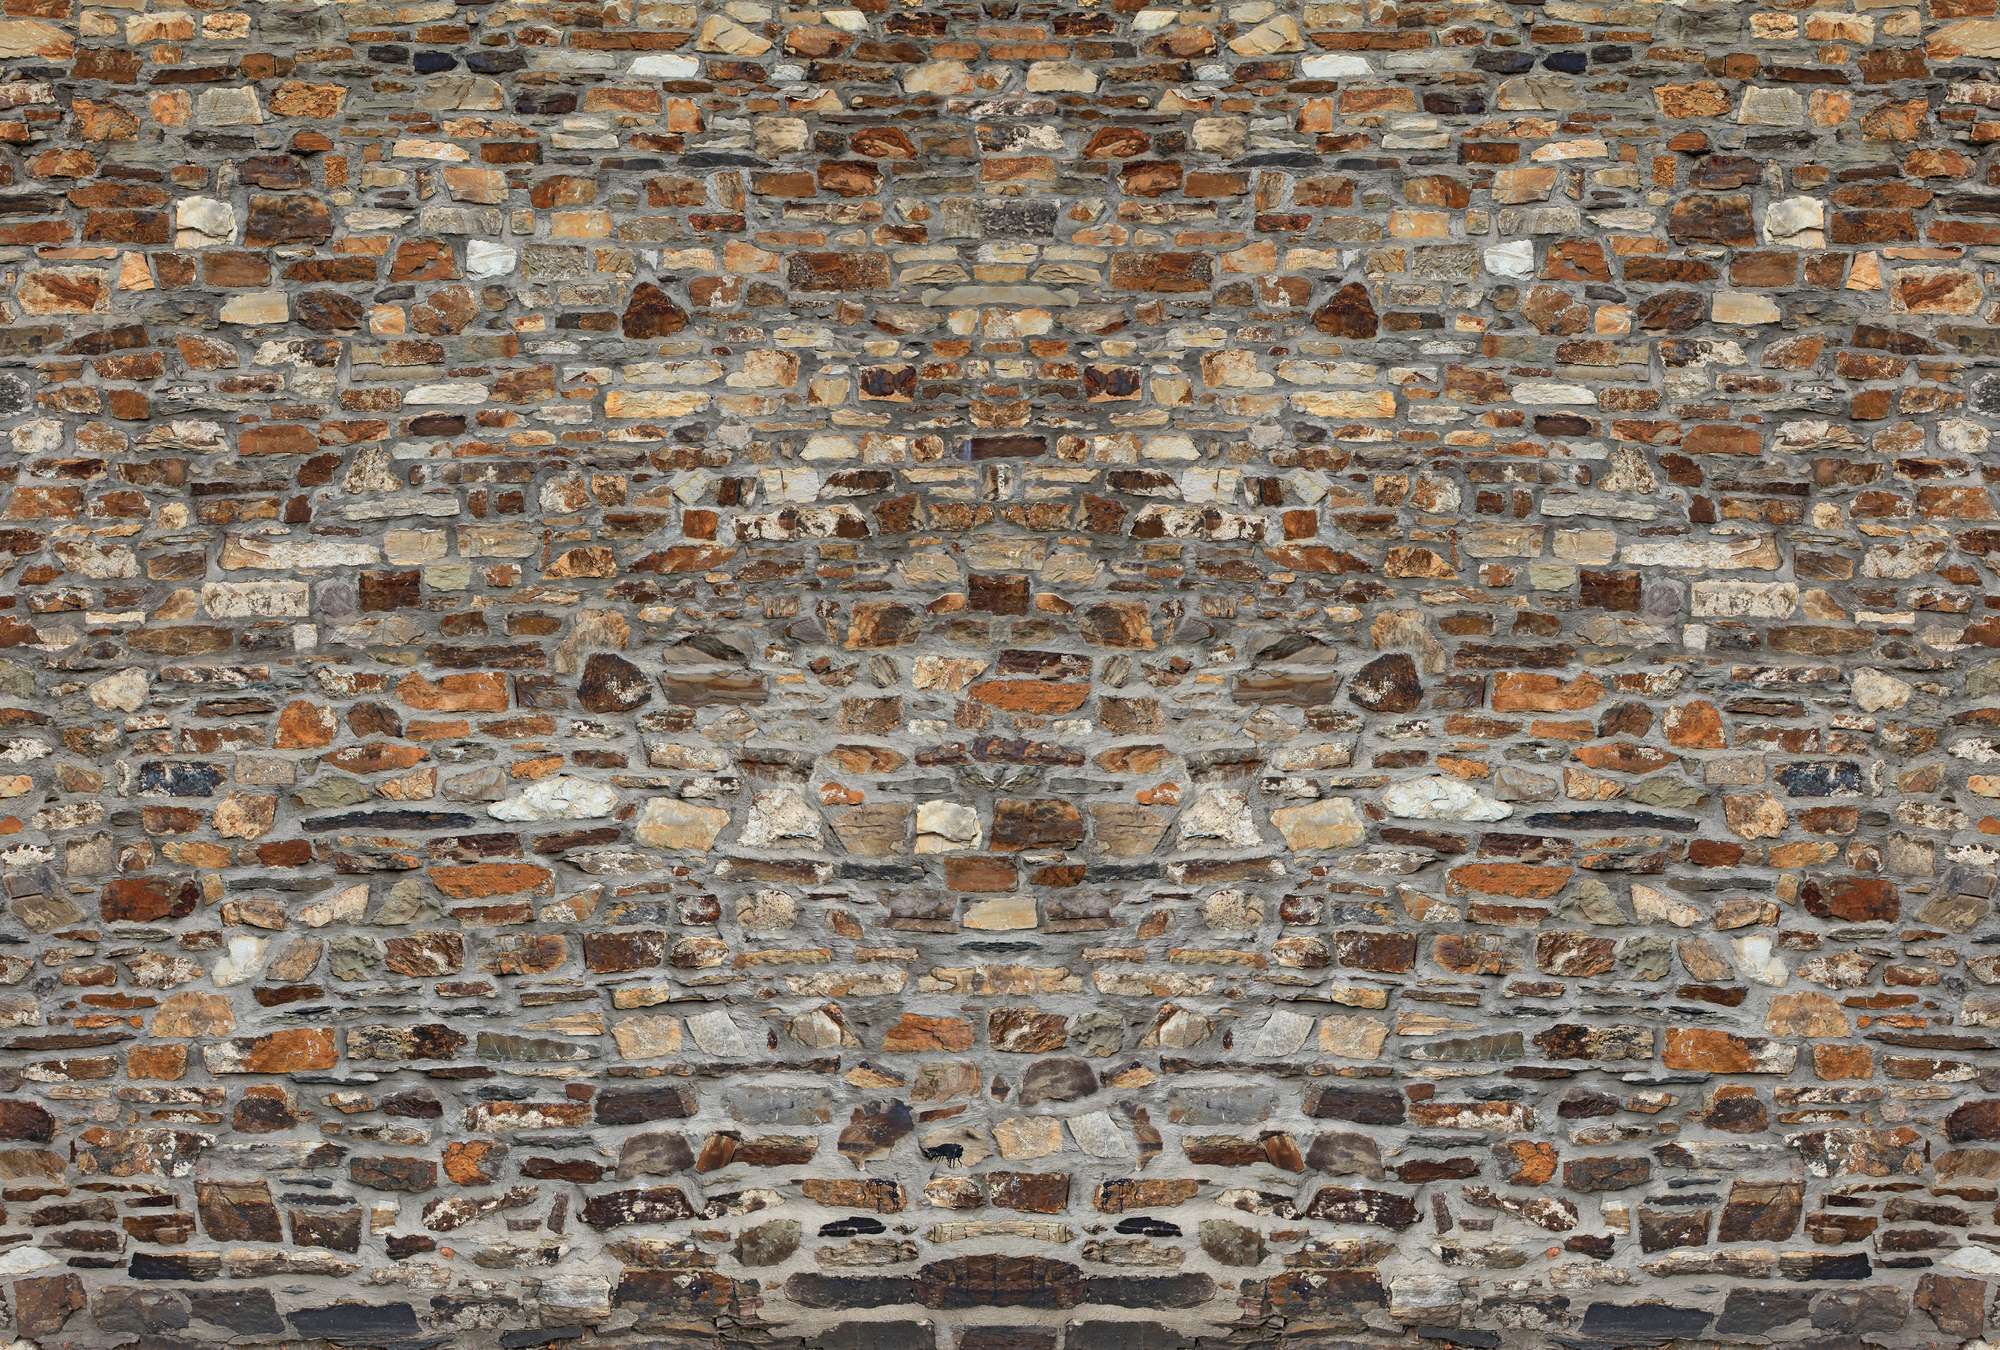             Mural 3D Pared de ladrillos antiguos y aspecto de piedra rústica
        